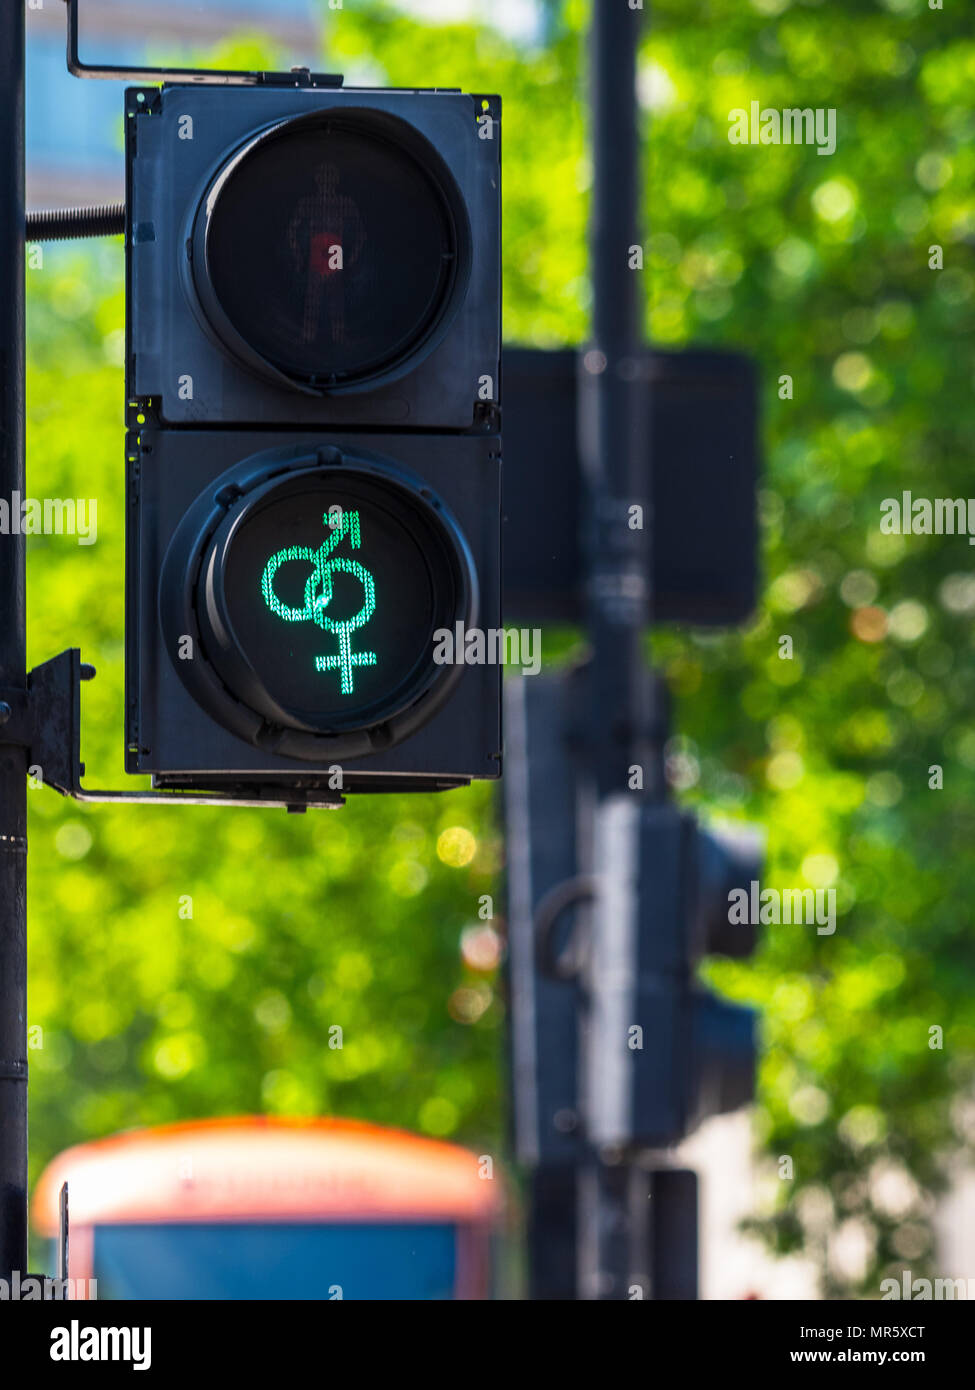 LGBT-Ampel am Trafalgar Square in London Großbritannien - als Teil der London Pride Festival installiert Stockfoto